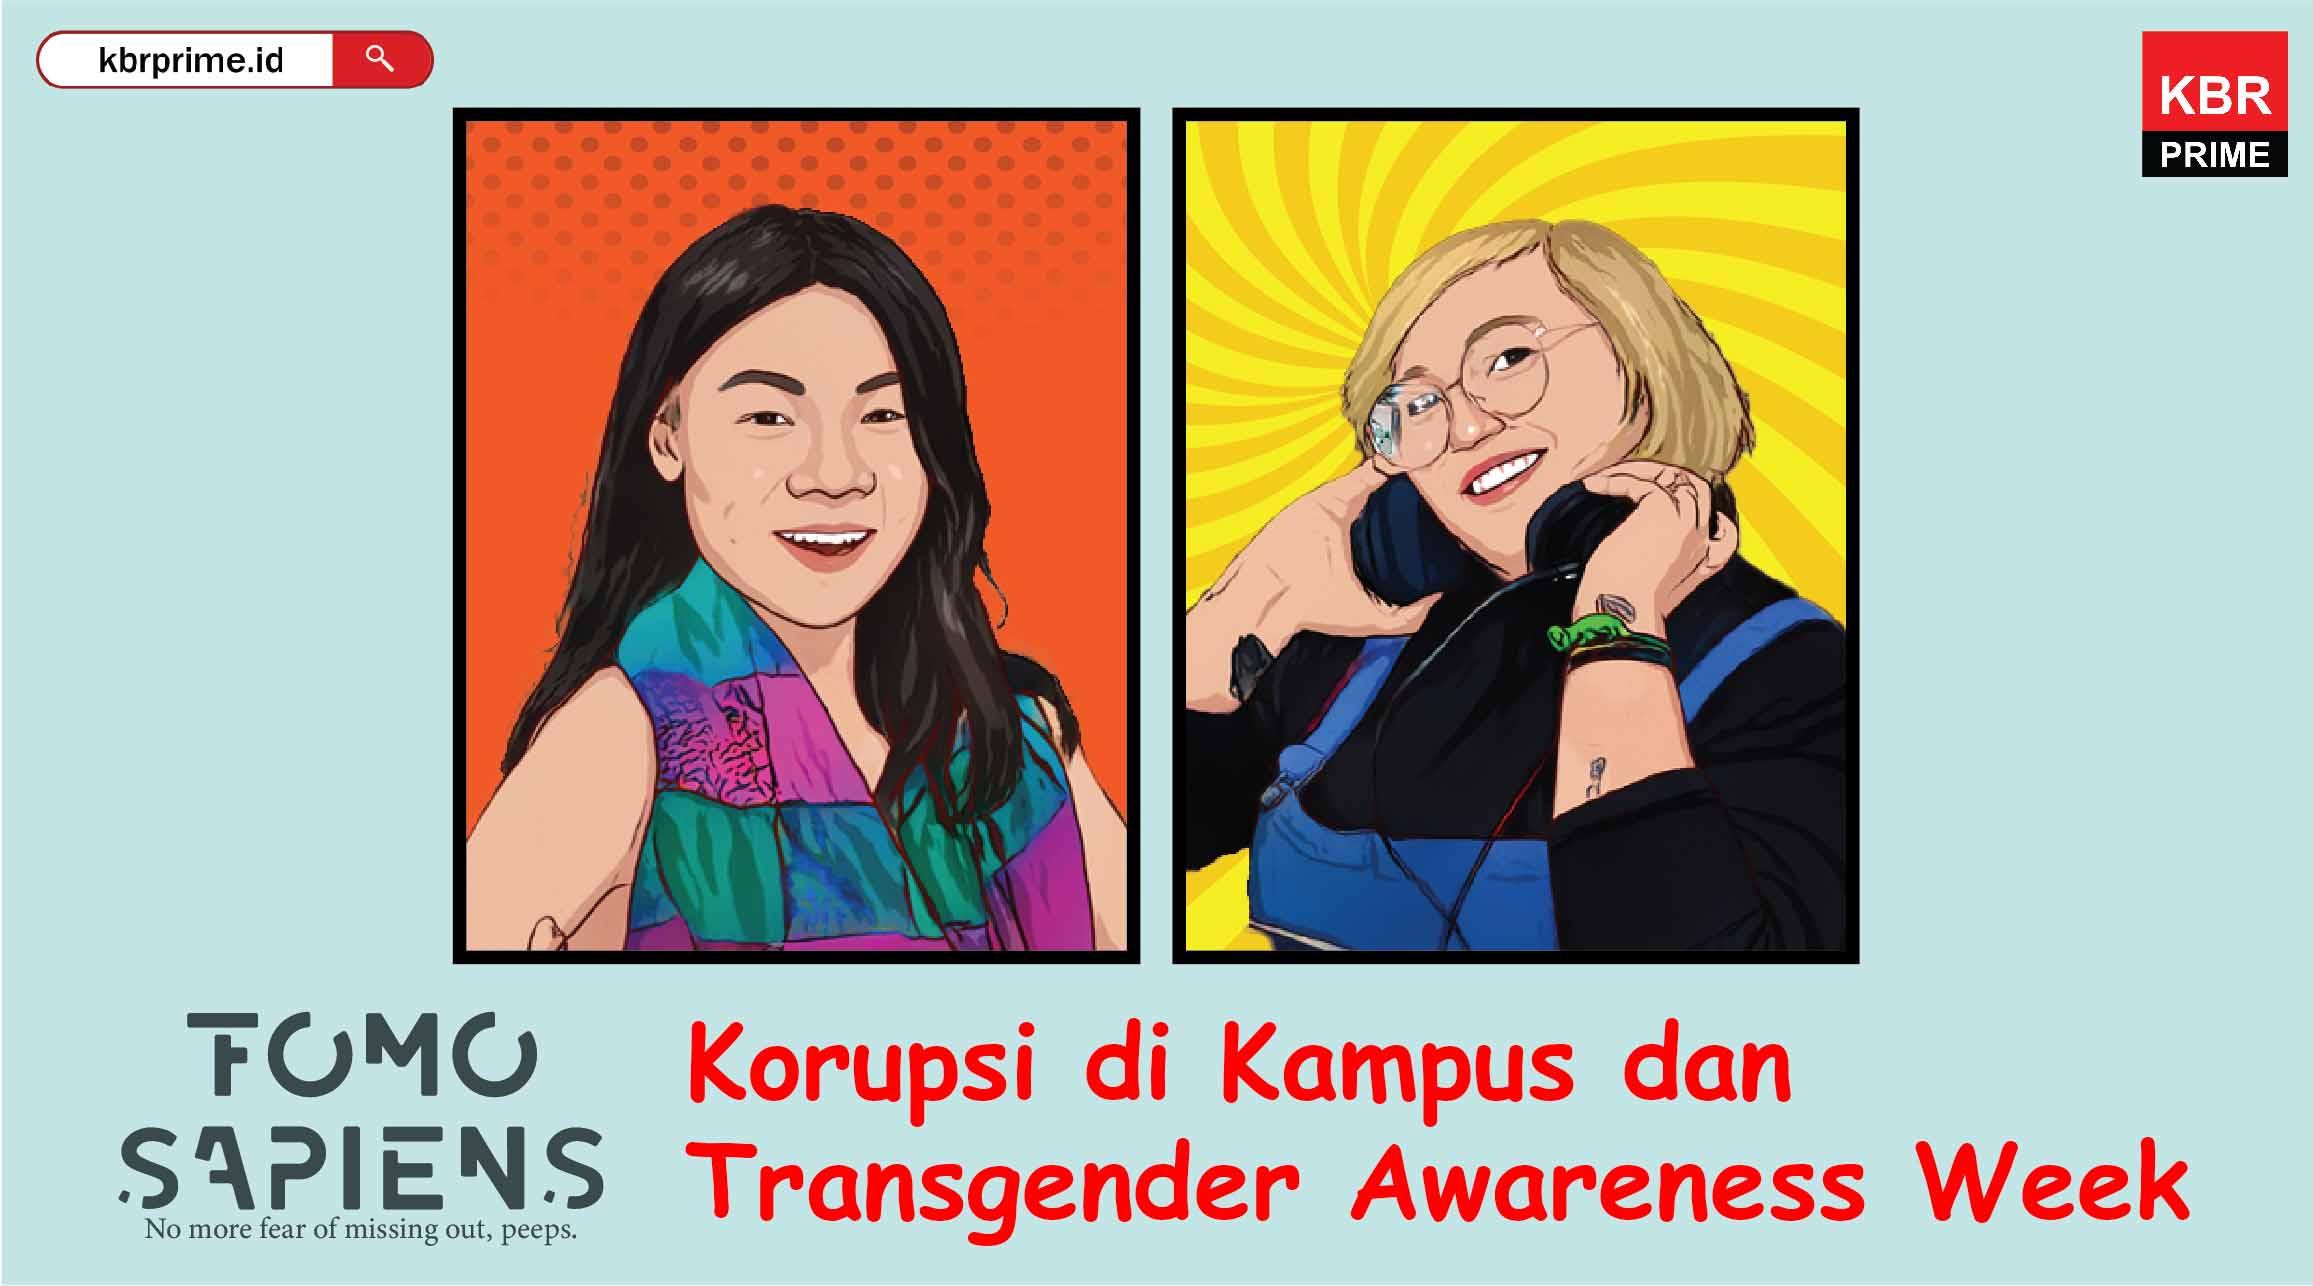 FOMO Sapiens : Korupsi di Kampus dan Transgender Awareness Week